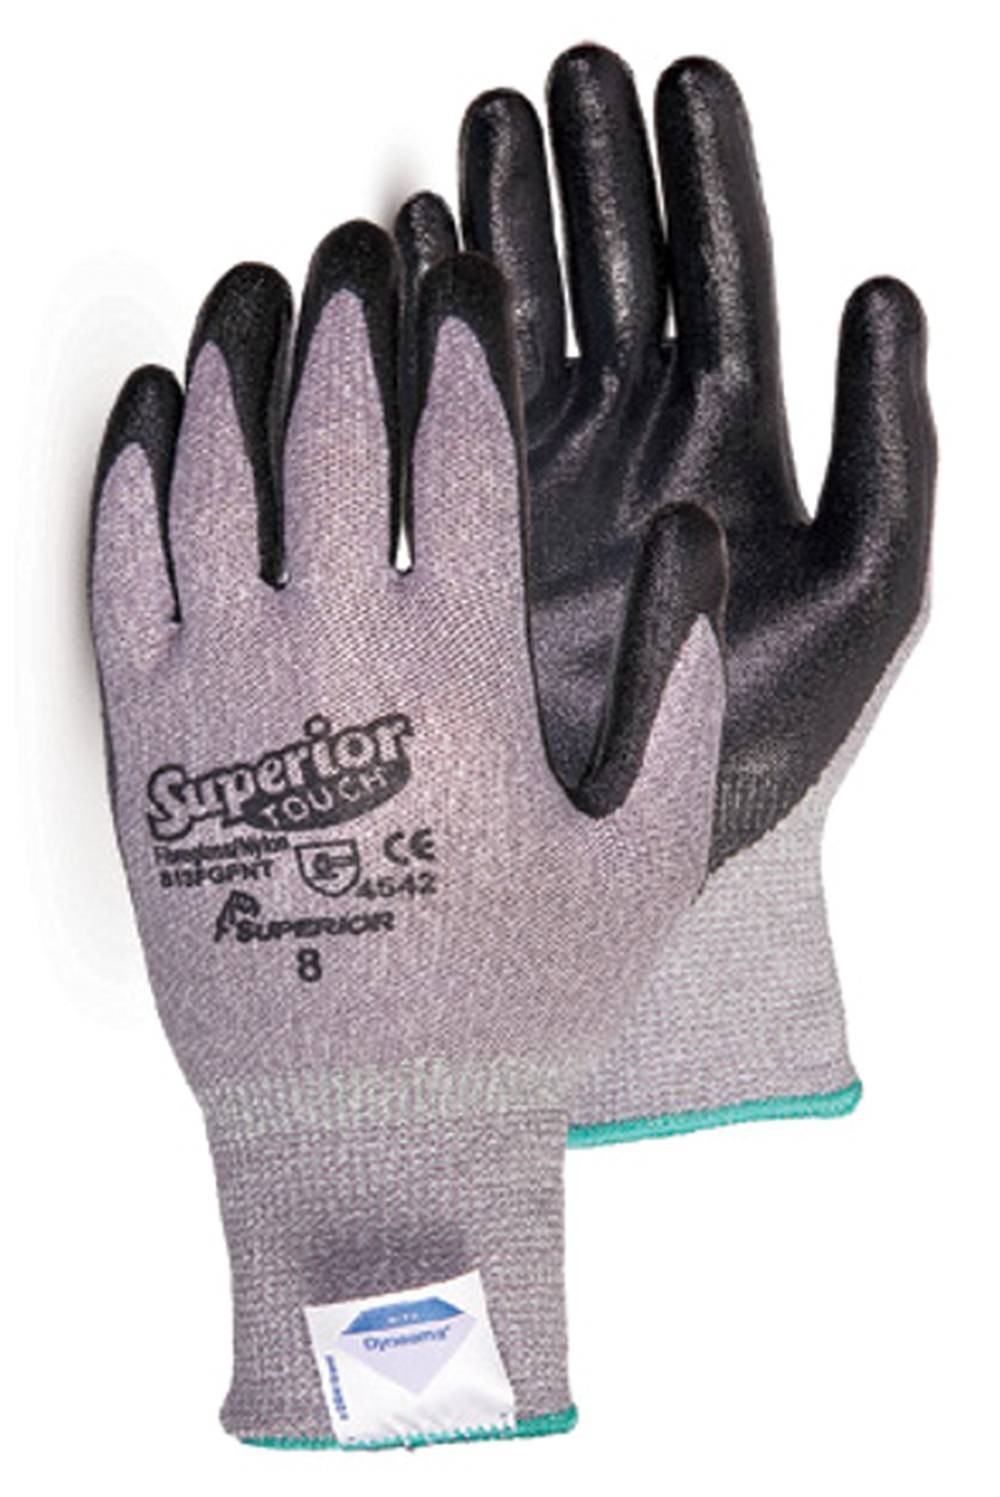 Achetez KAYGO gants de travail résistants aux coupures EN388 4X42C - 2  paires, revêtement en nitrile micromousse, lavable en machine, anti-coupures  pour le travail général, KG21N (Gris, S, taille 7):  ✓